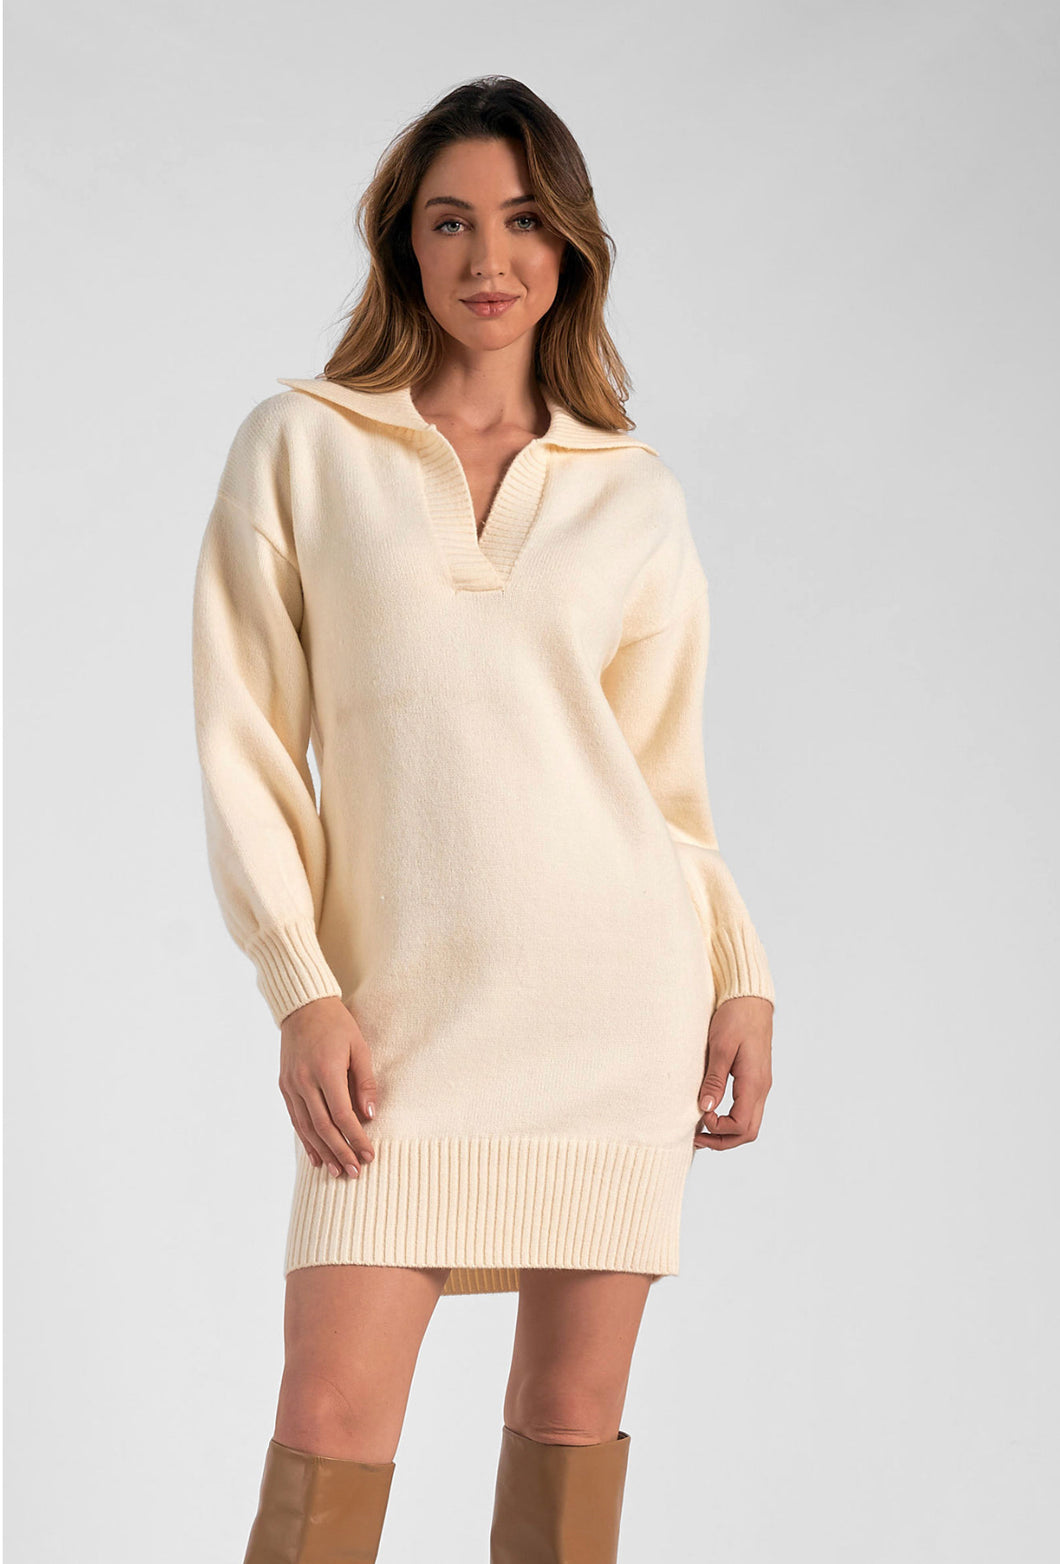 Elan Sweater Dress